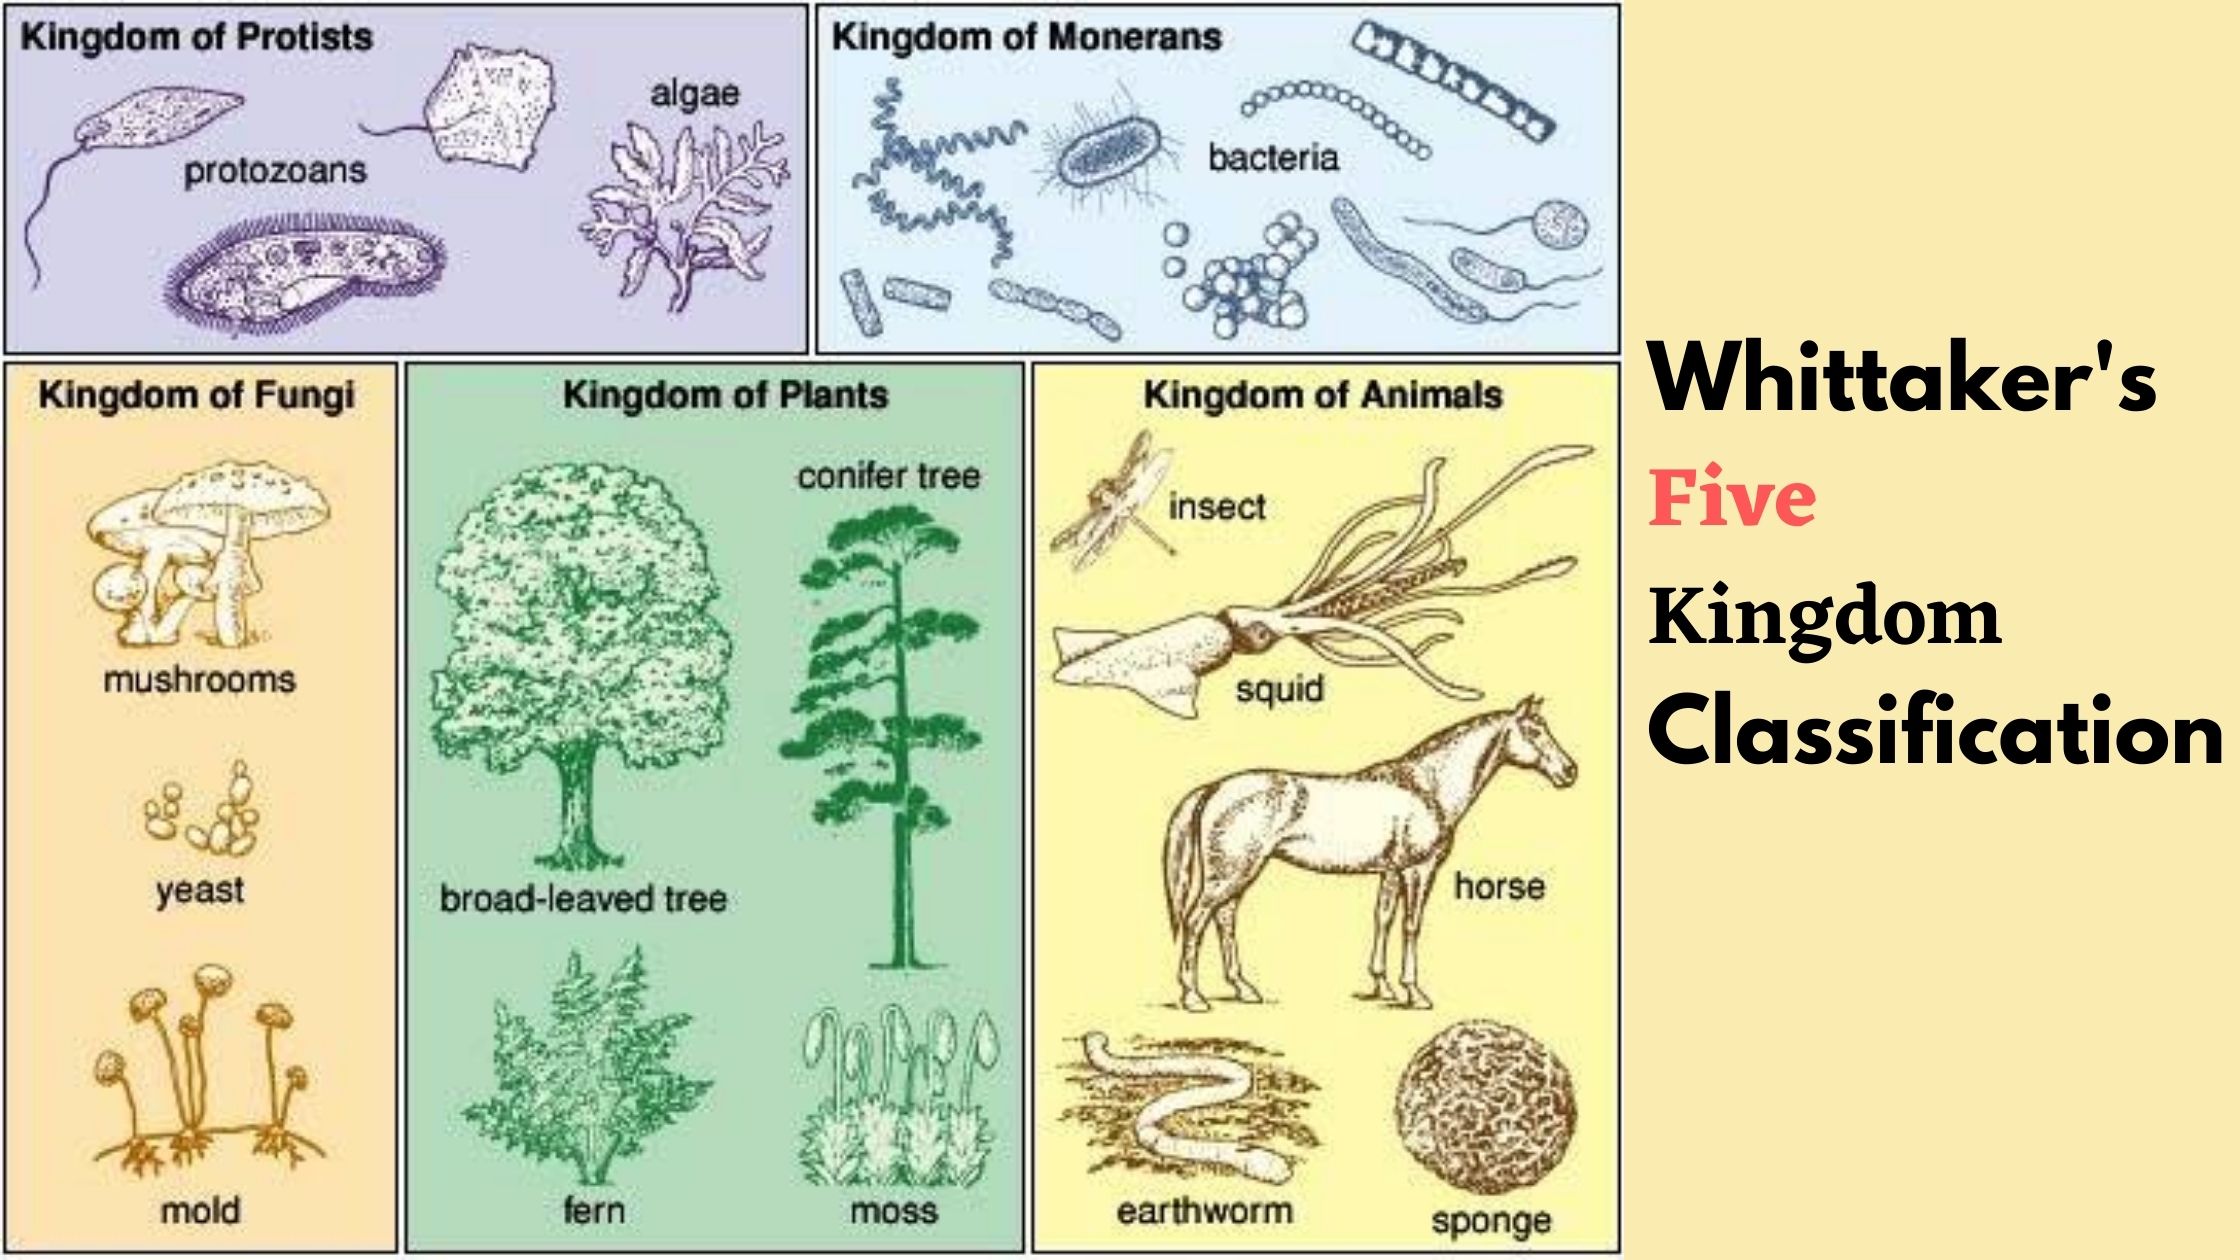 Whittaker's Five Kingdom Classification